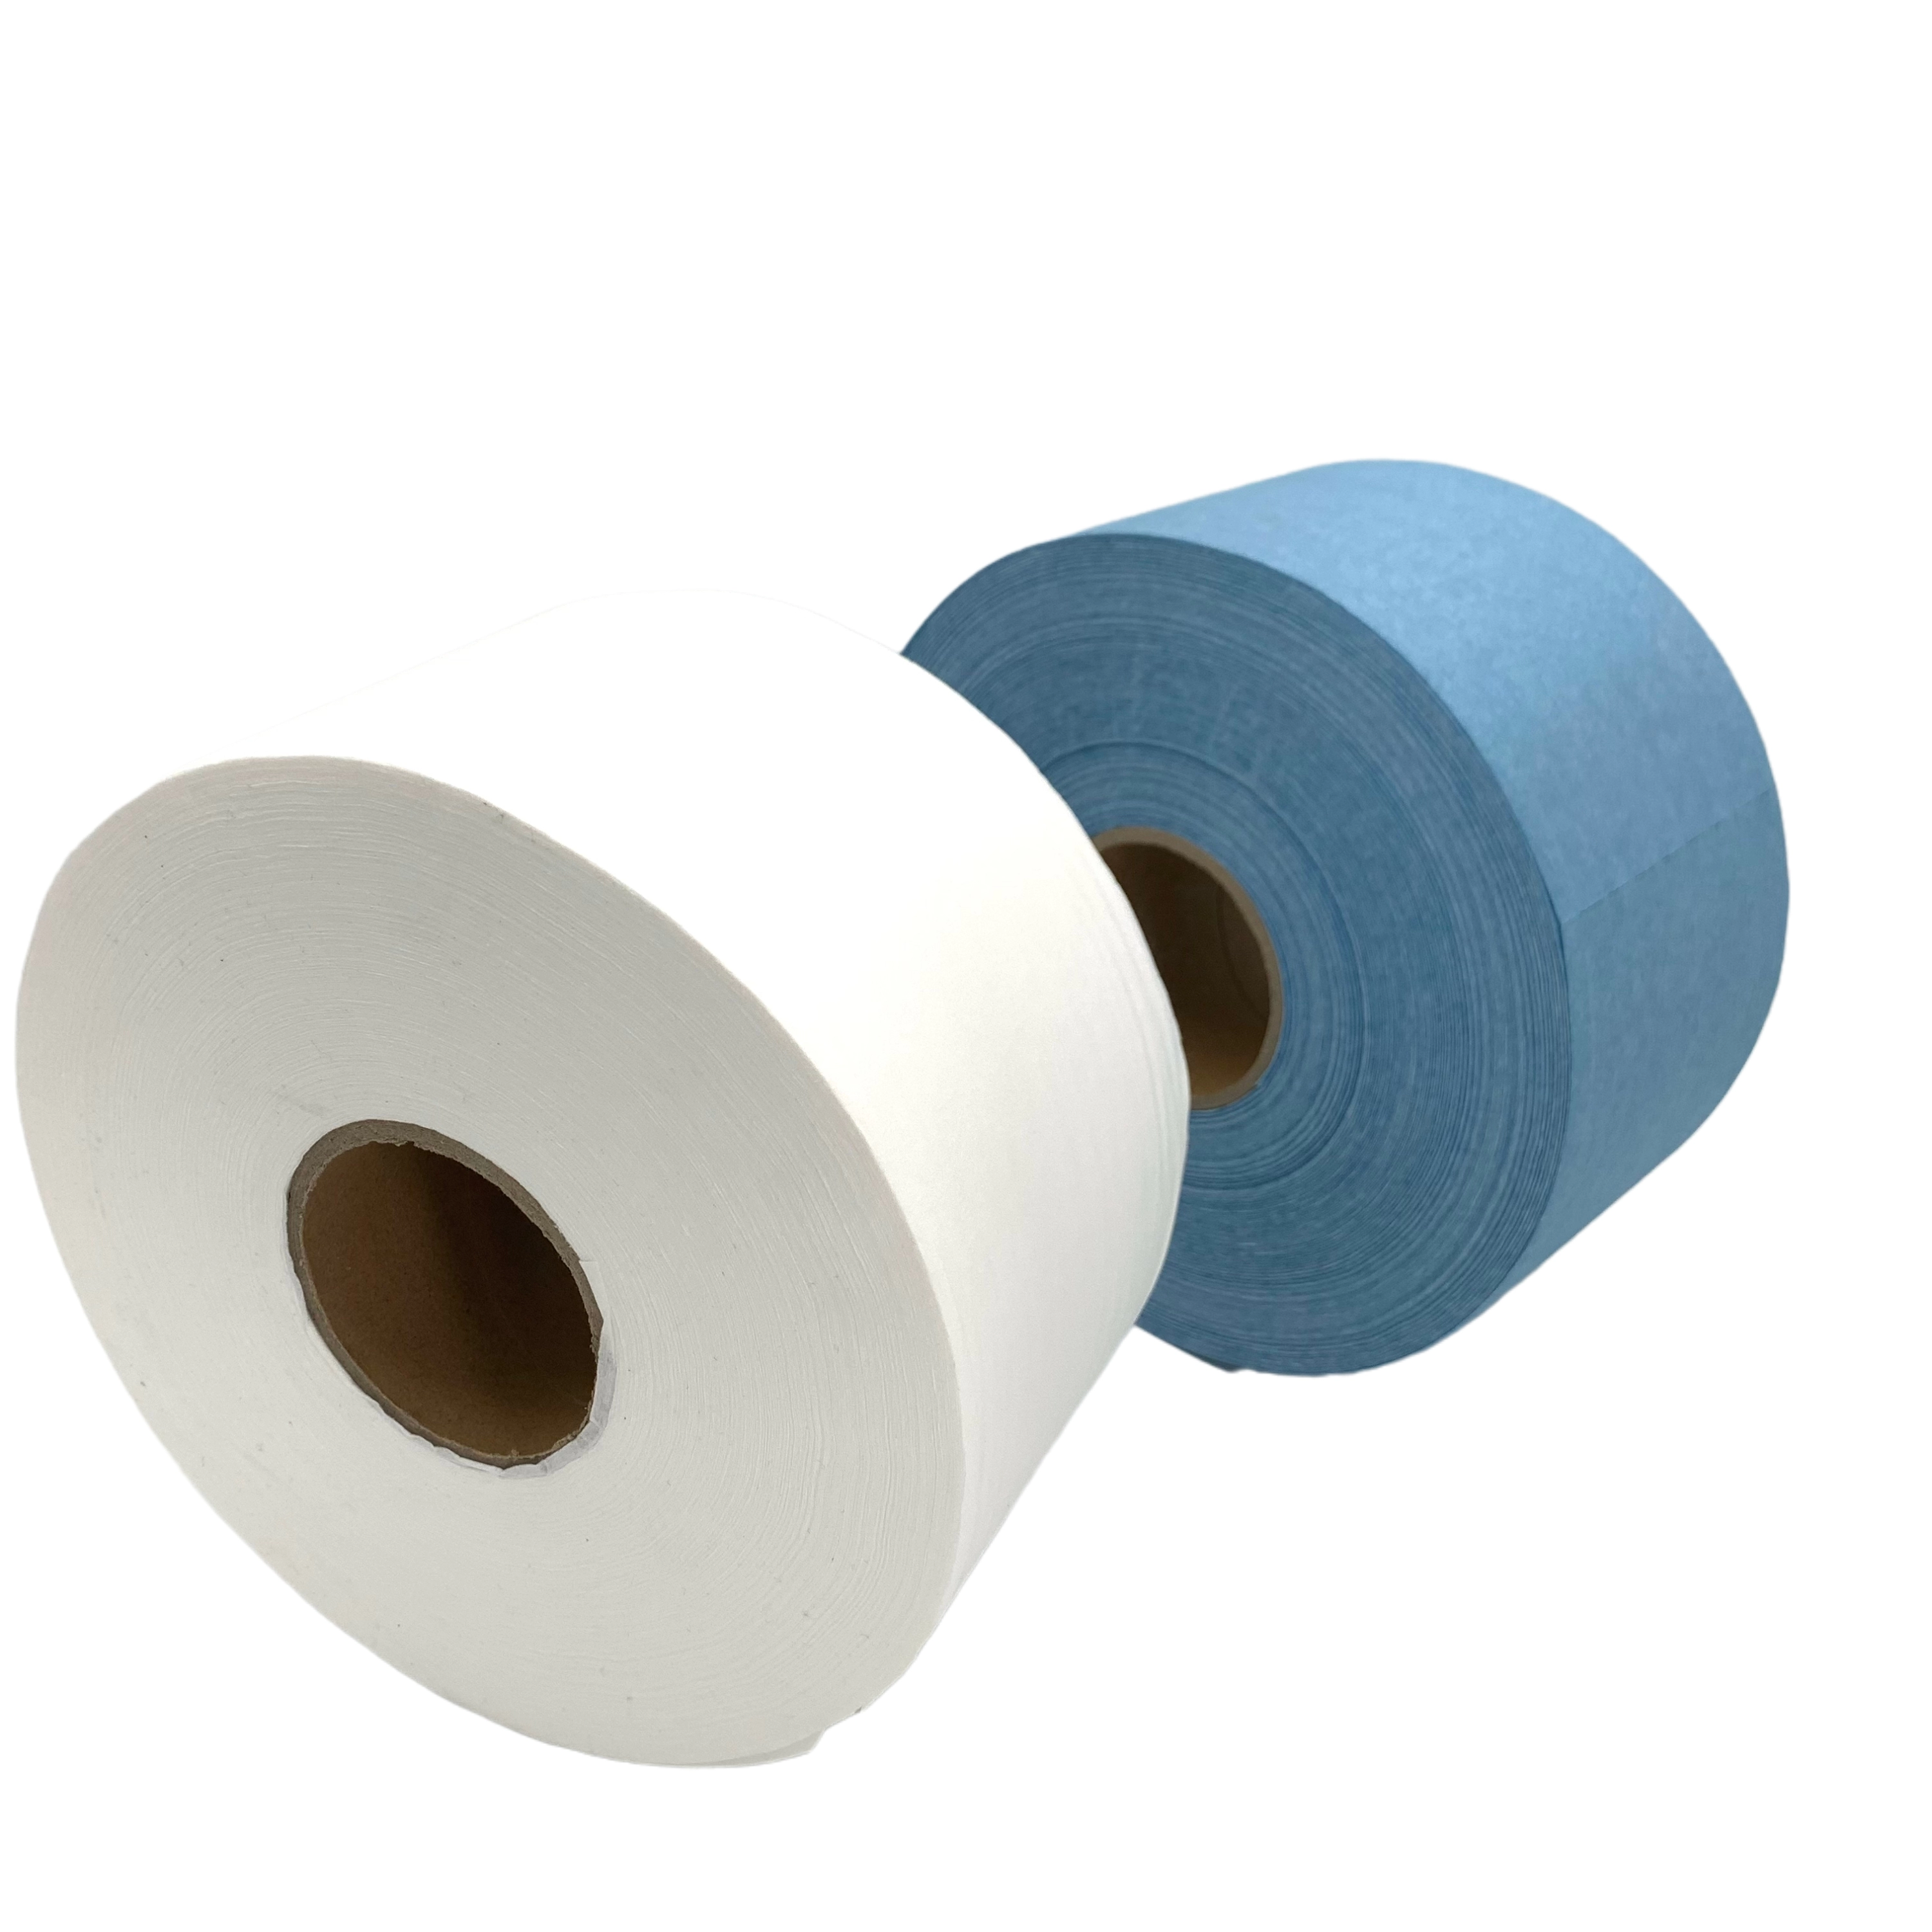 JD-6550 Big Roll Clean Room Wiper Roll Industriële papierrol Fabrikant Directe verkoop voor meerdere manieren van gebruik: